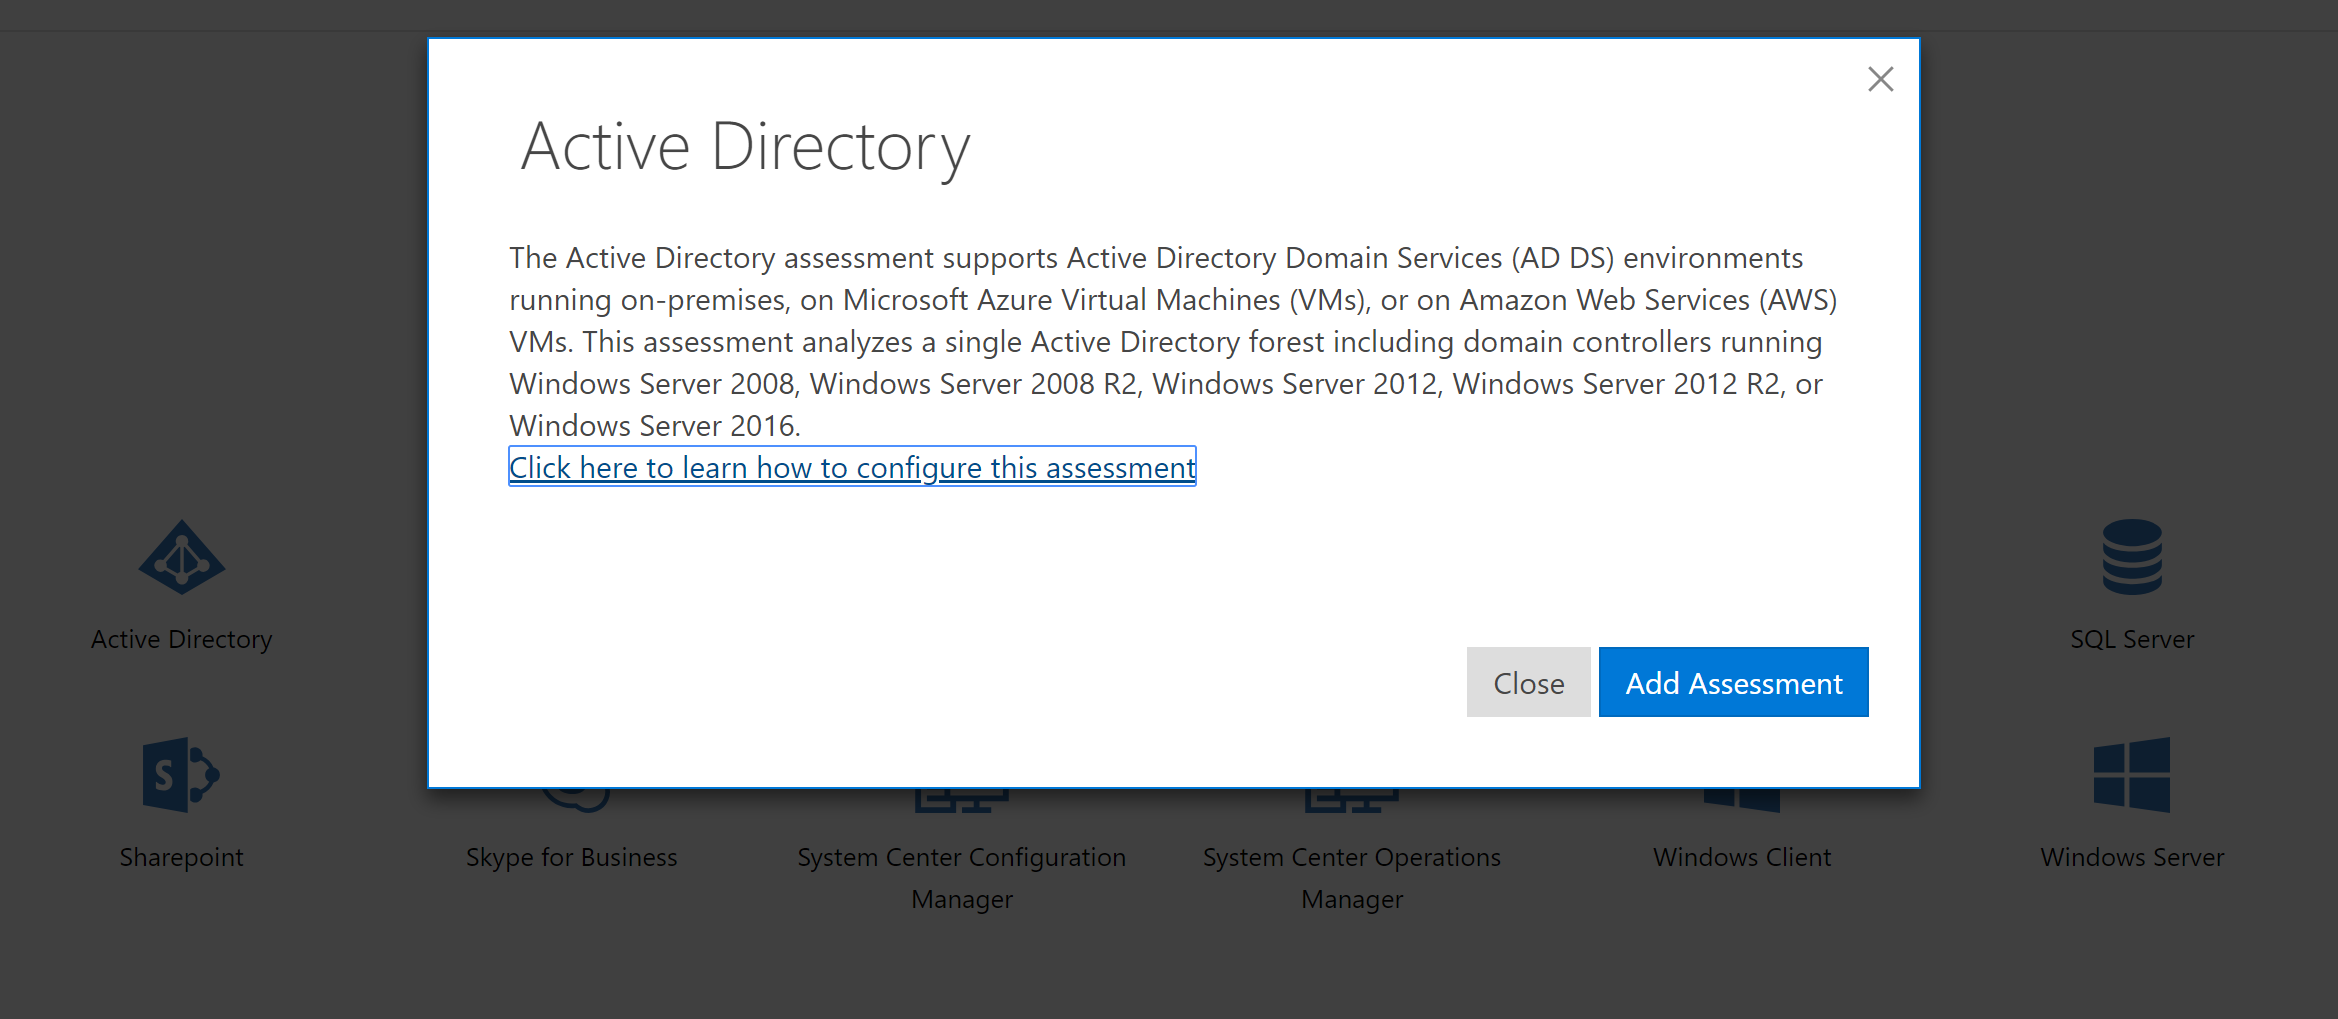 Entra ID サービス環境をサポートするための Active Directory 評価の説明。